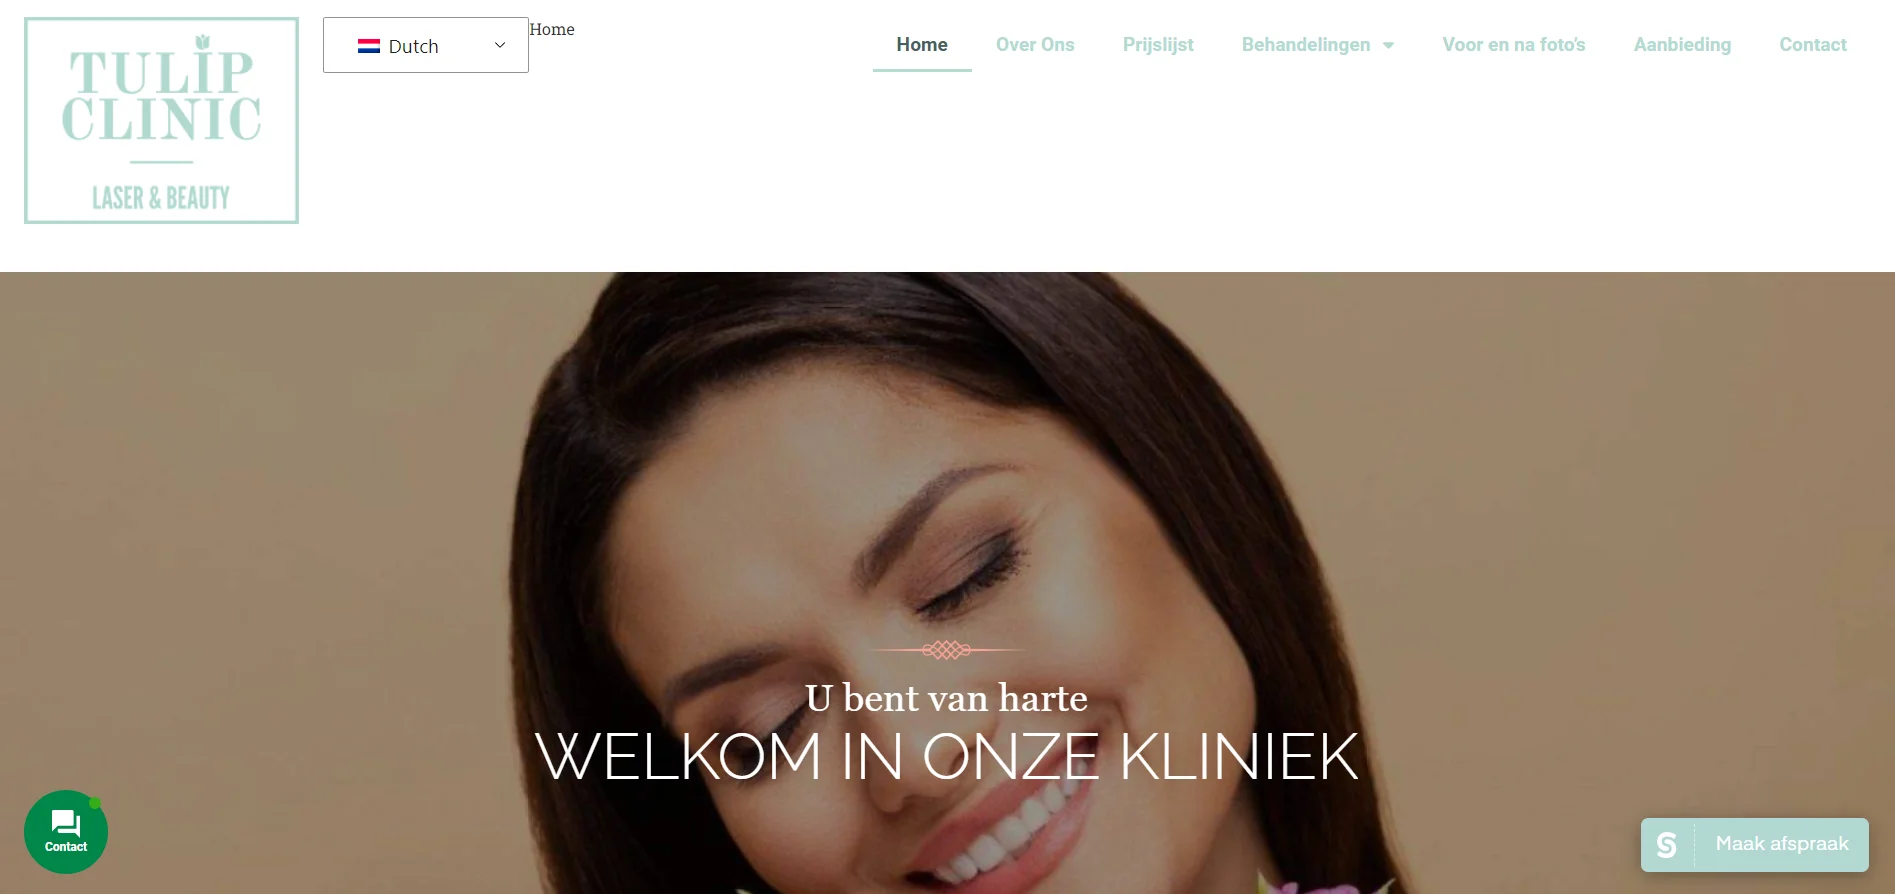 کلینیک زیبایی تولیپ در کشور هلند